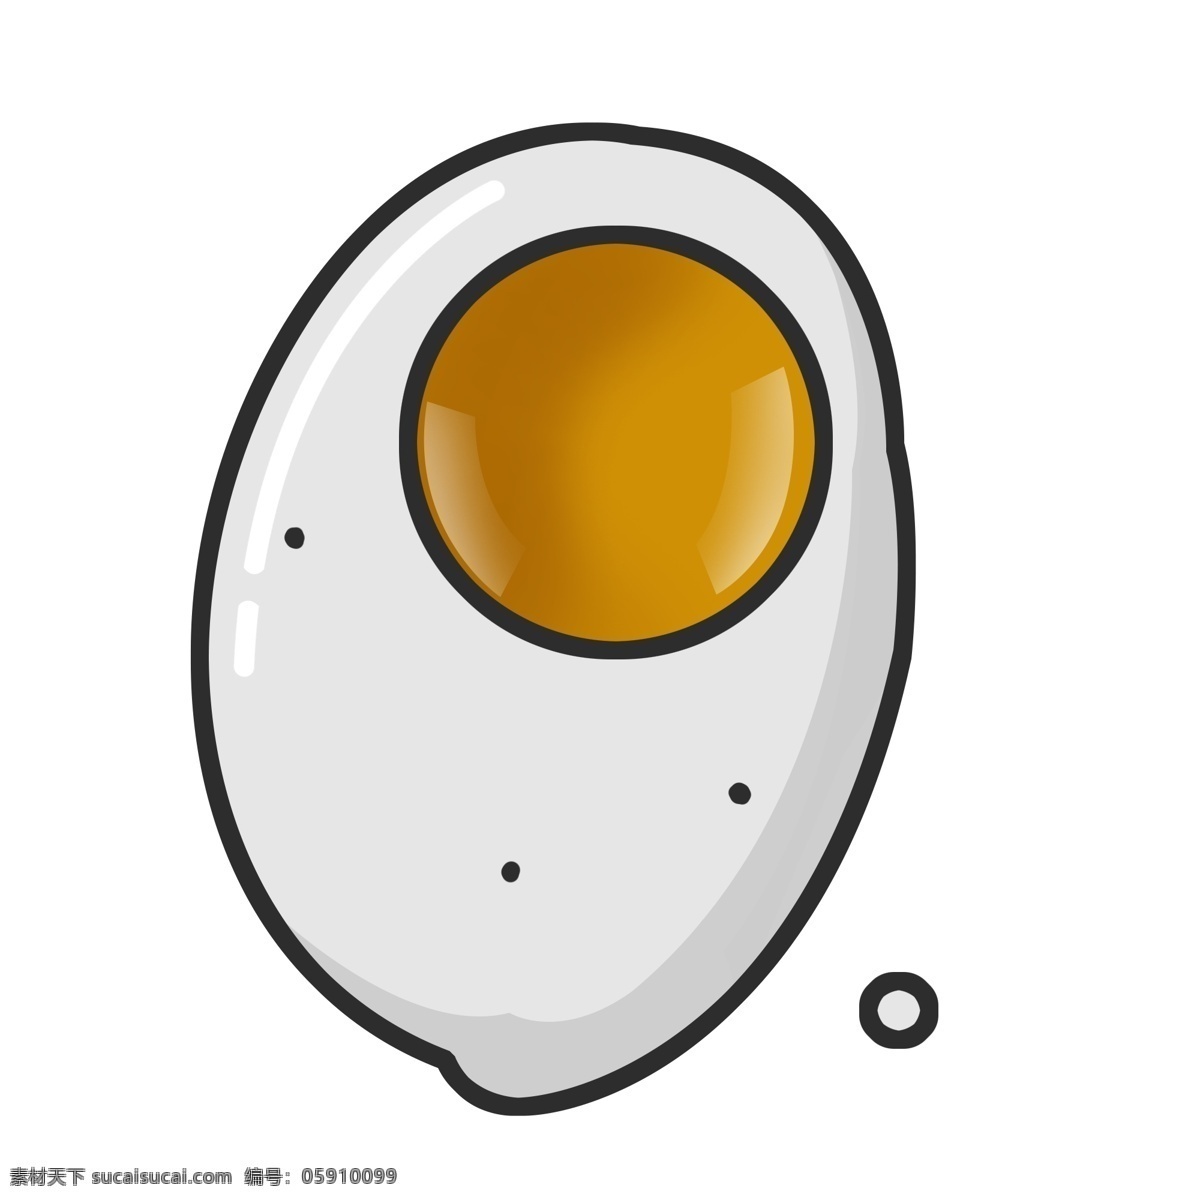 煎蛋图标 图标icon 荷包蛋 营养早餐 土鸡蛋 鸡蛋 新鲜 鸡蛋logo